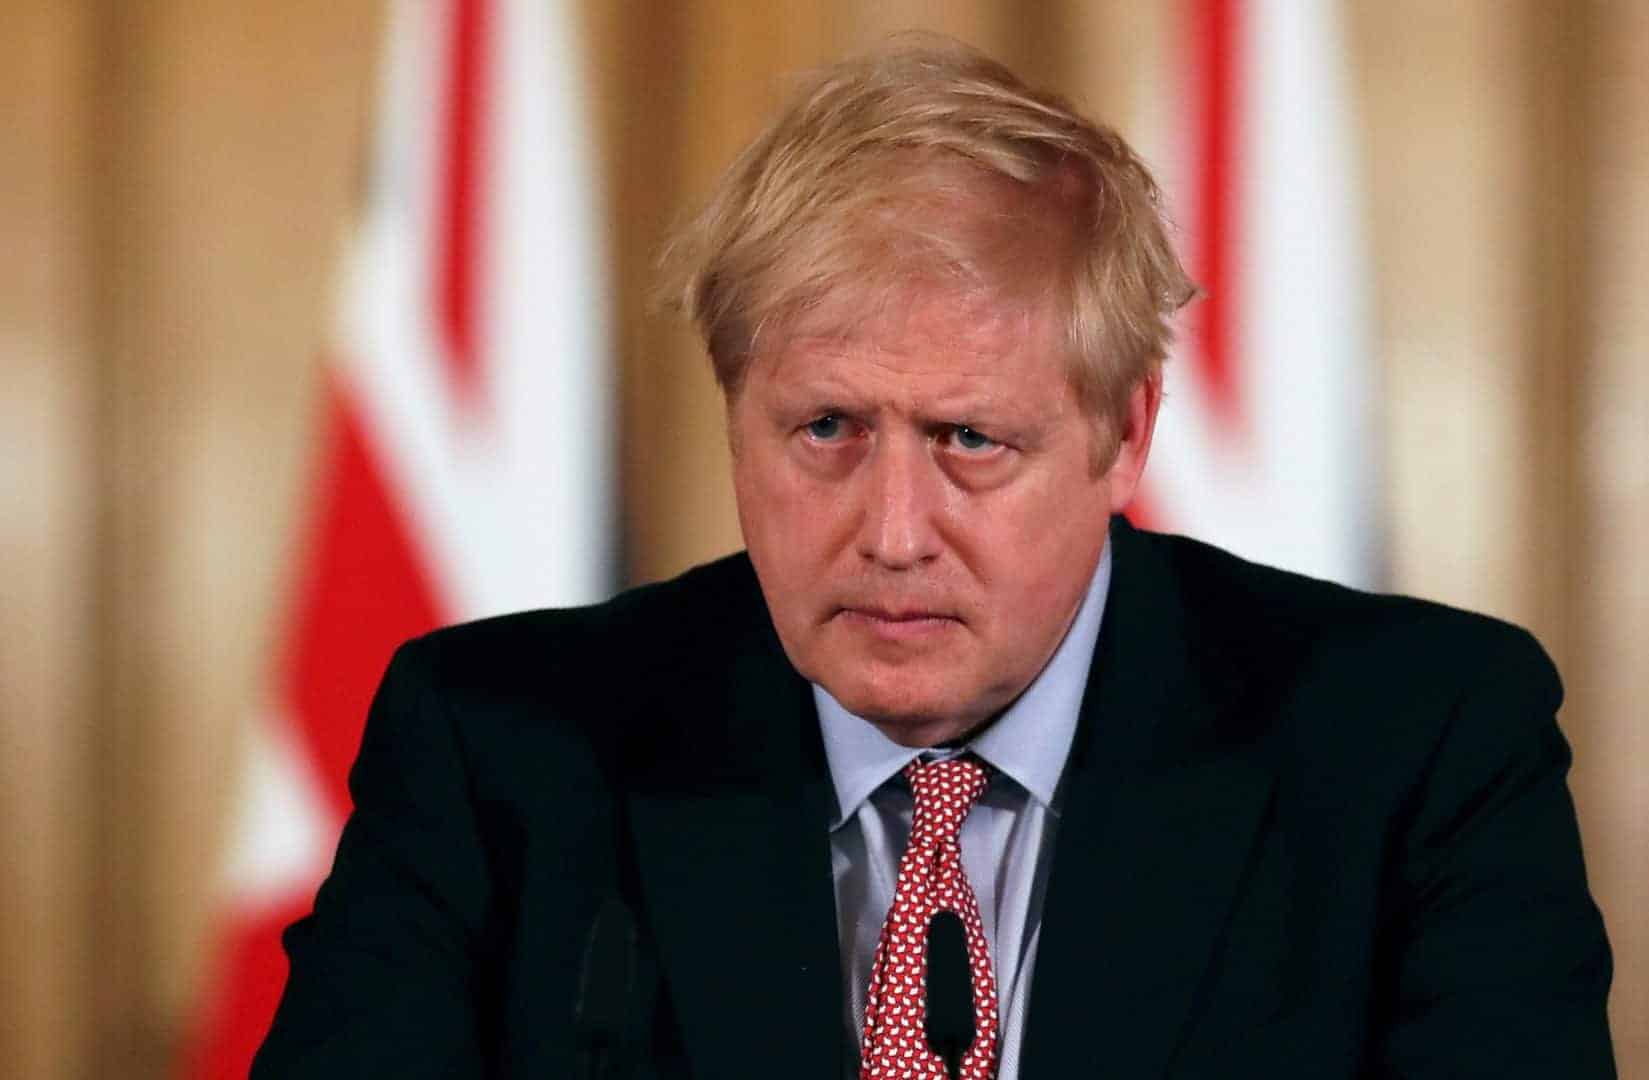 Boris Johnson held his first daily coronavirus update -11 distraught responses